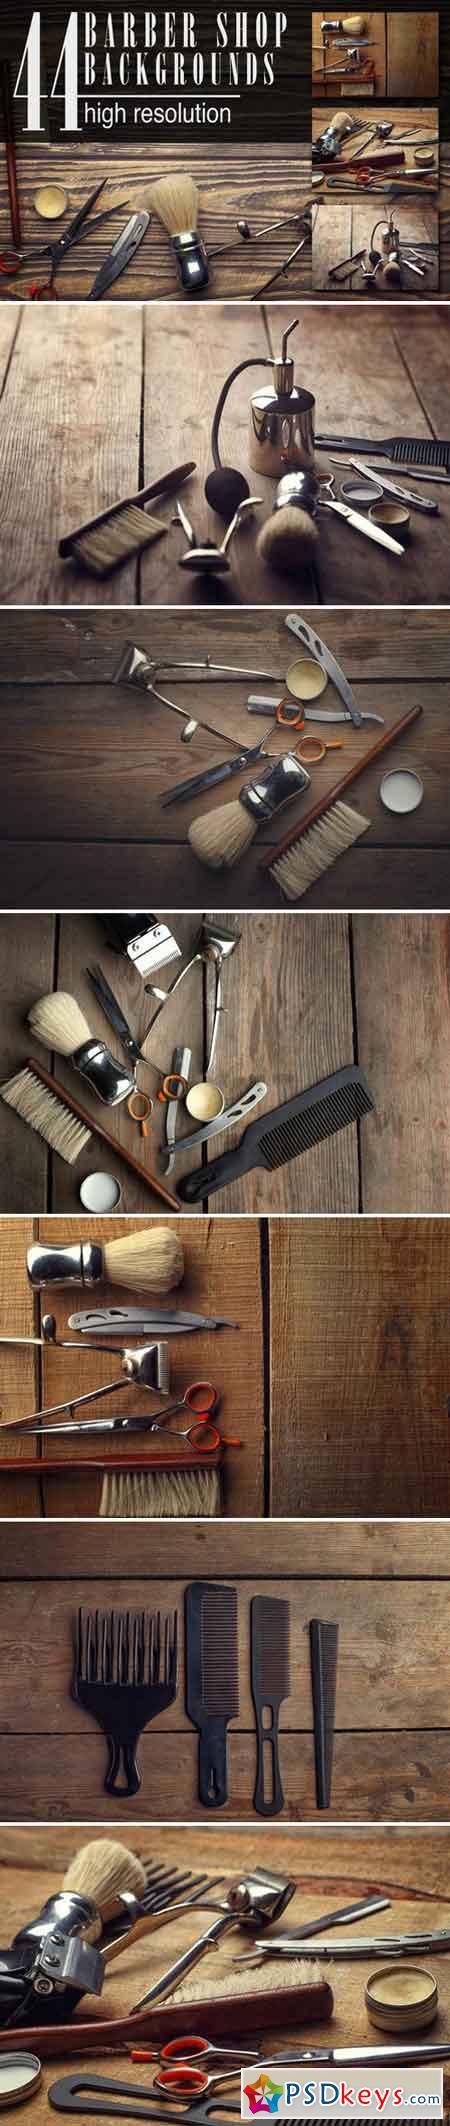 44 barber shop wooden backgrounds 102071